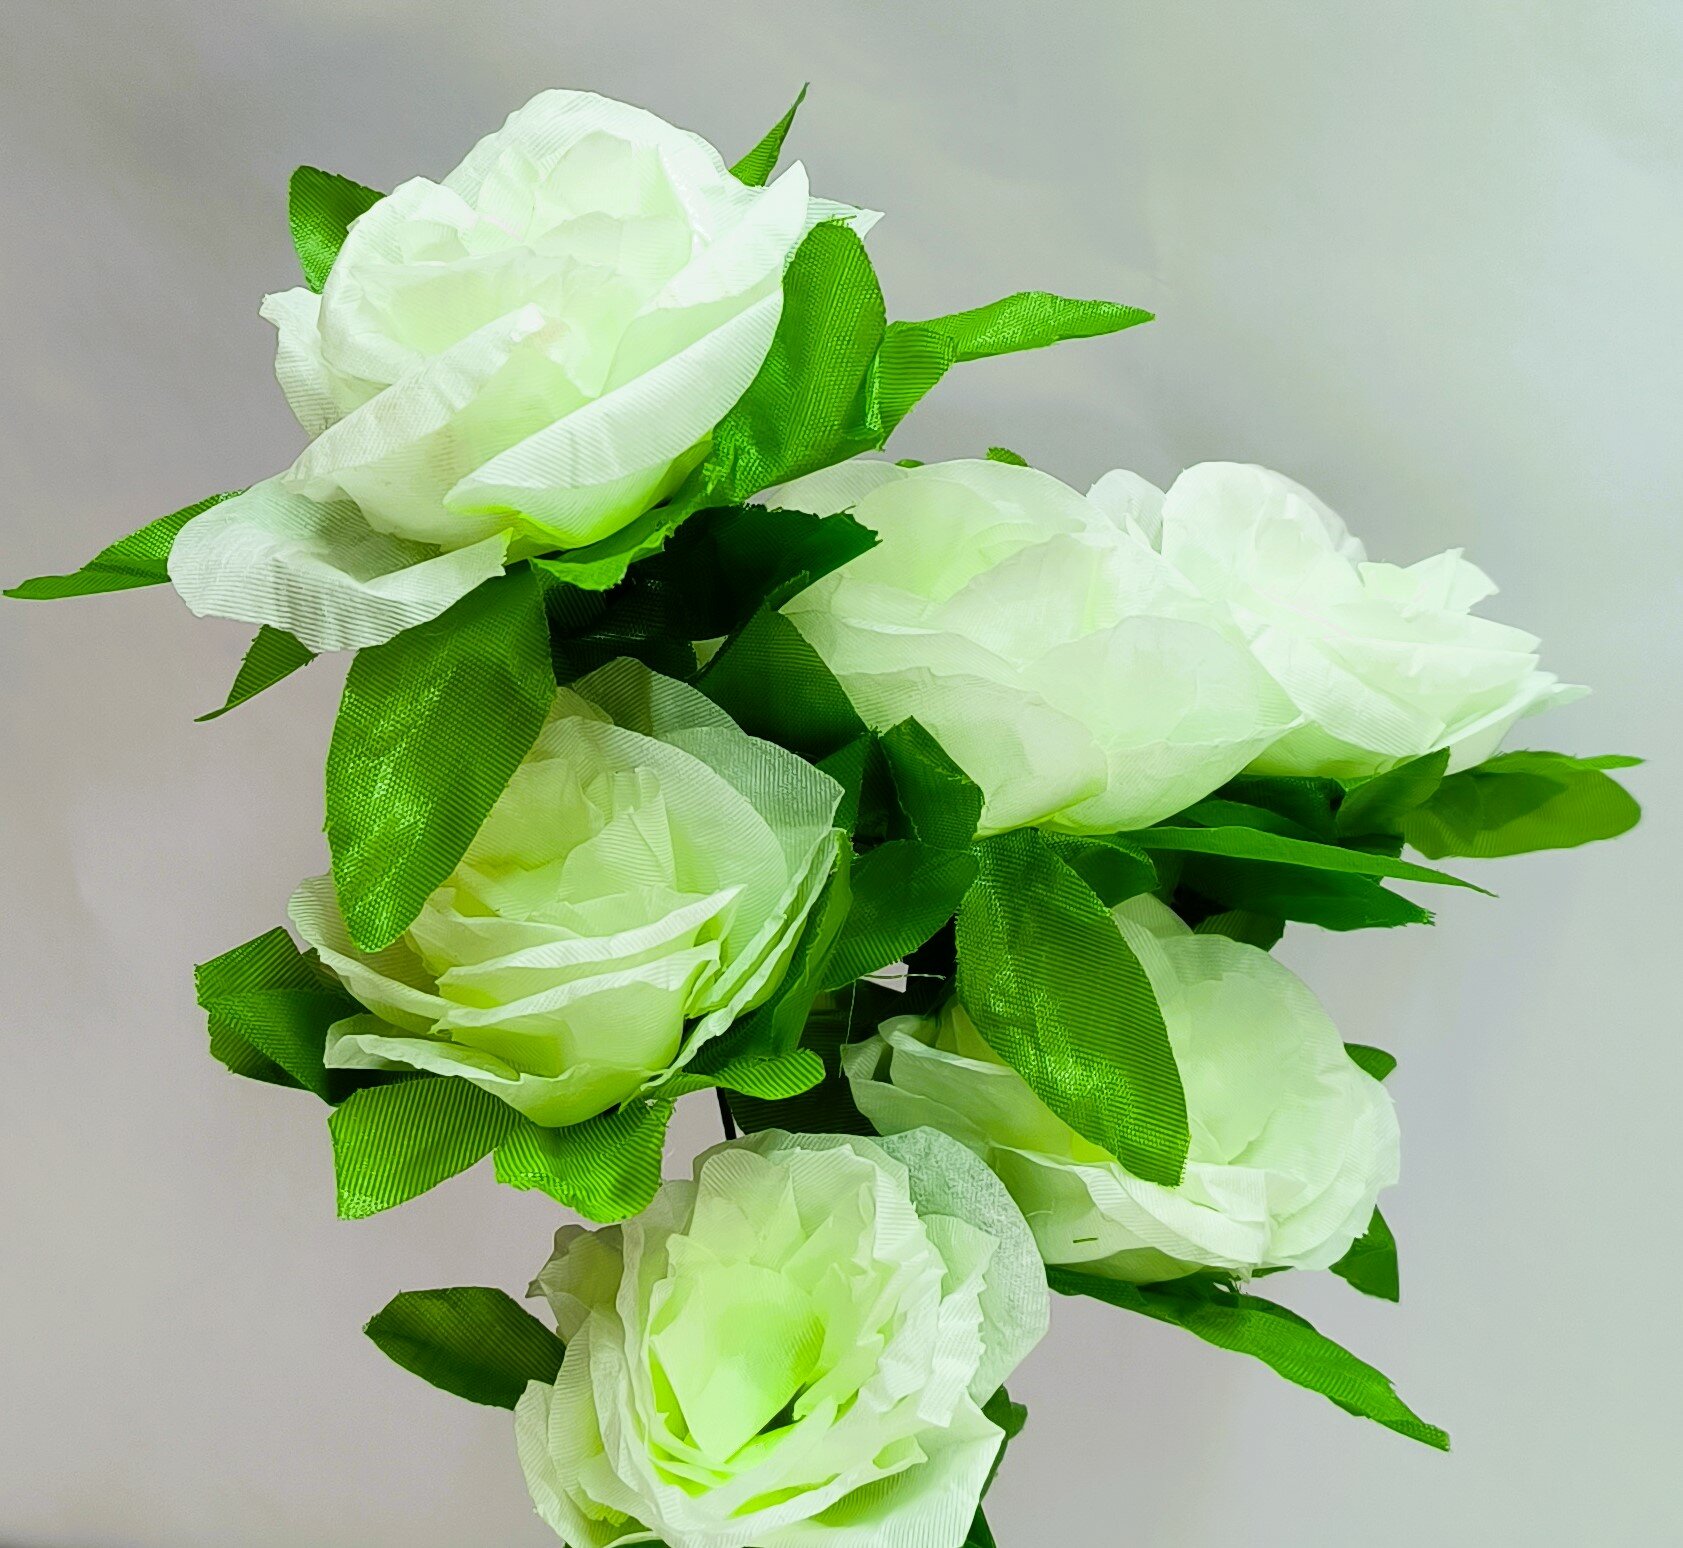 Розы белые, 1 стебель высотой 40см, на каждом 6 бутонов диаметром 9 см